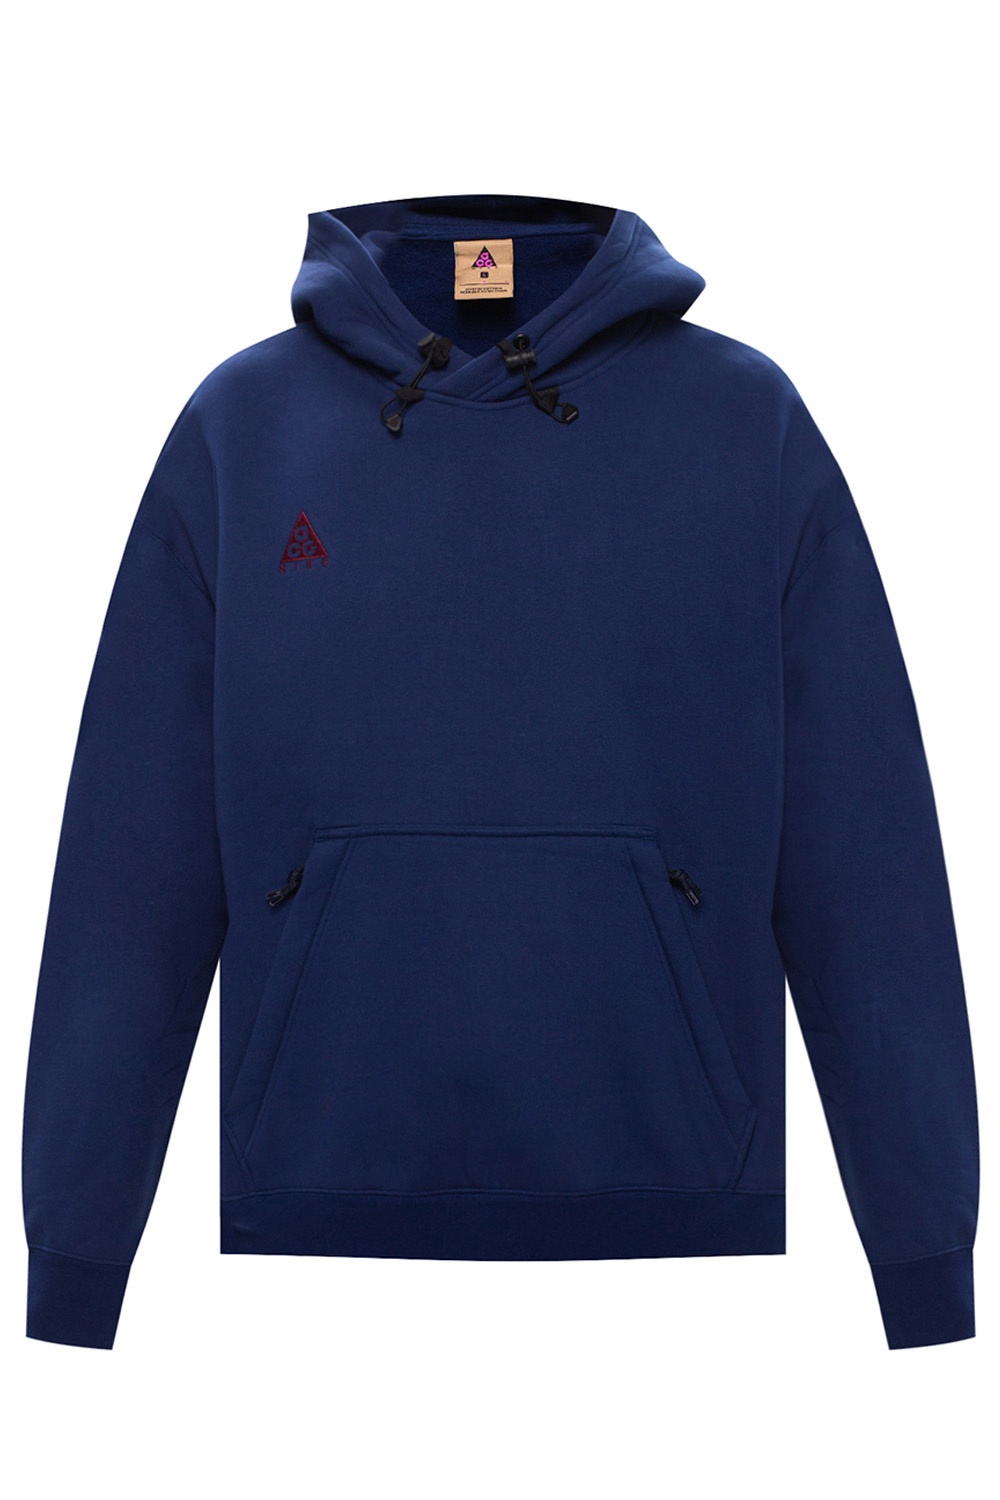 Nike 'ACG' hoodie with logo | Men's Clothing | Vitkac